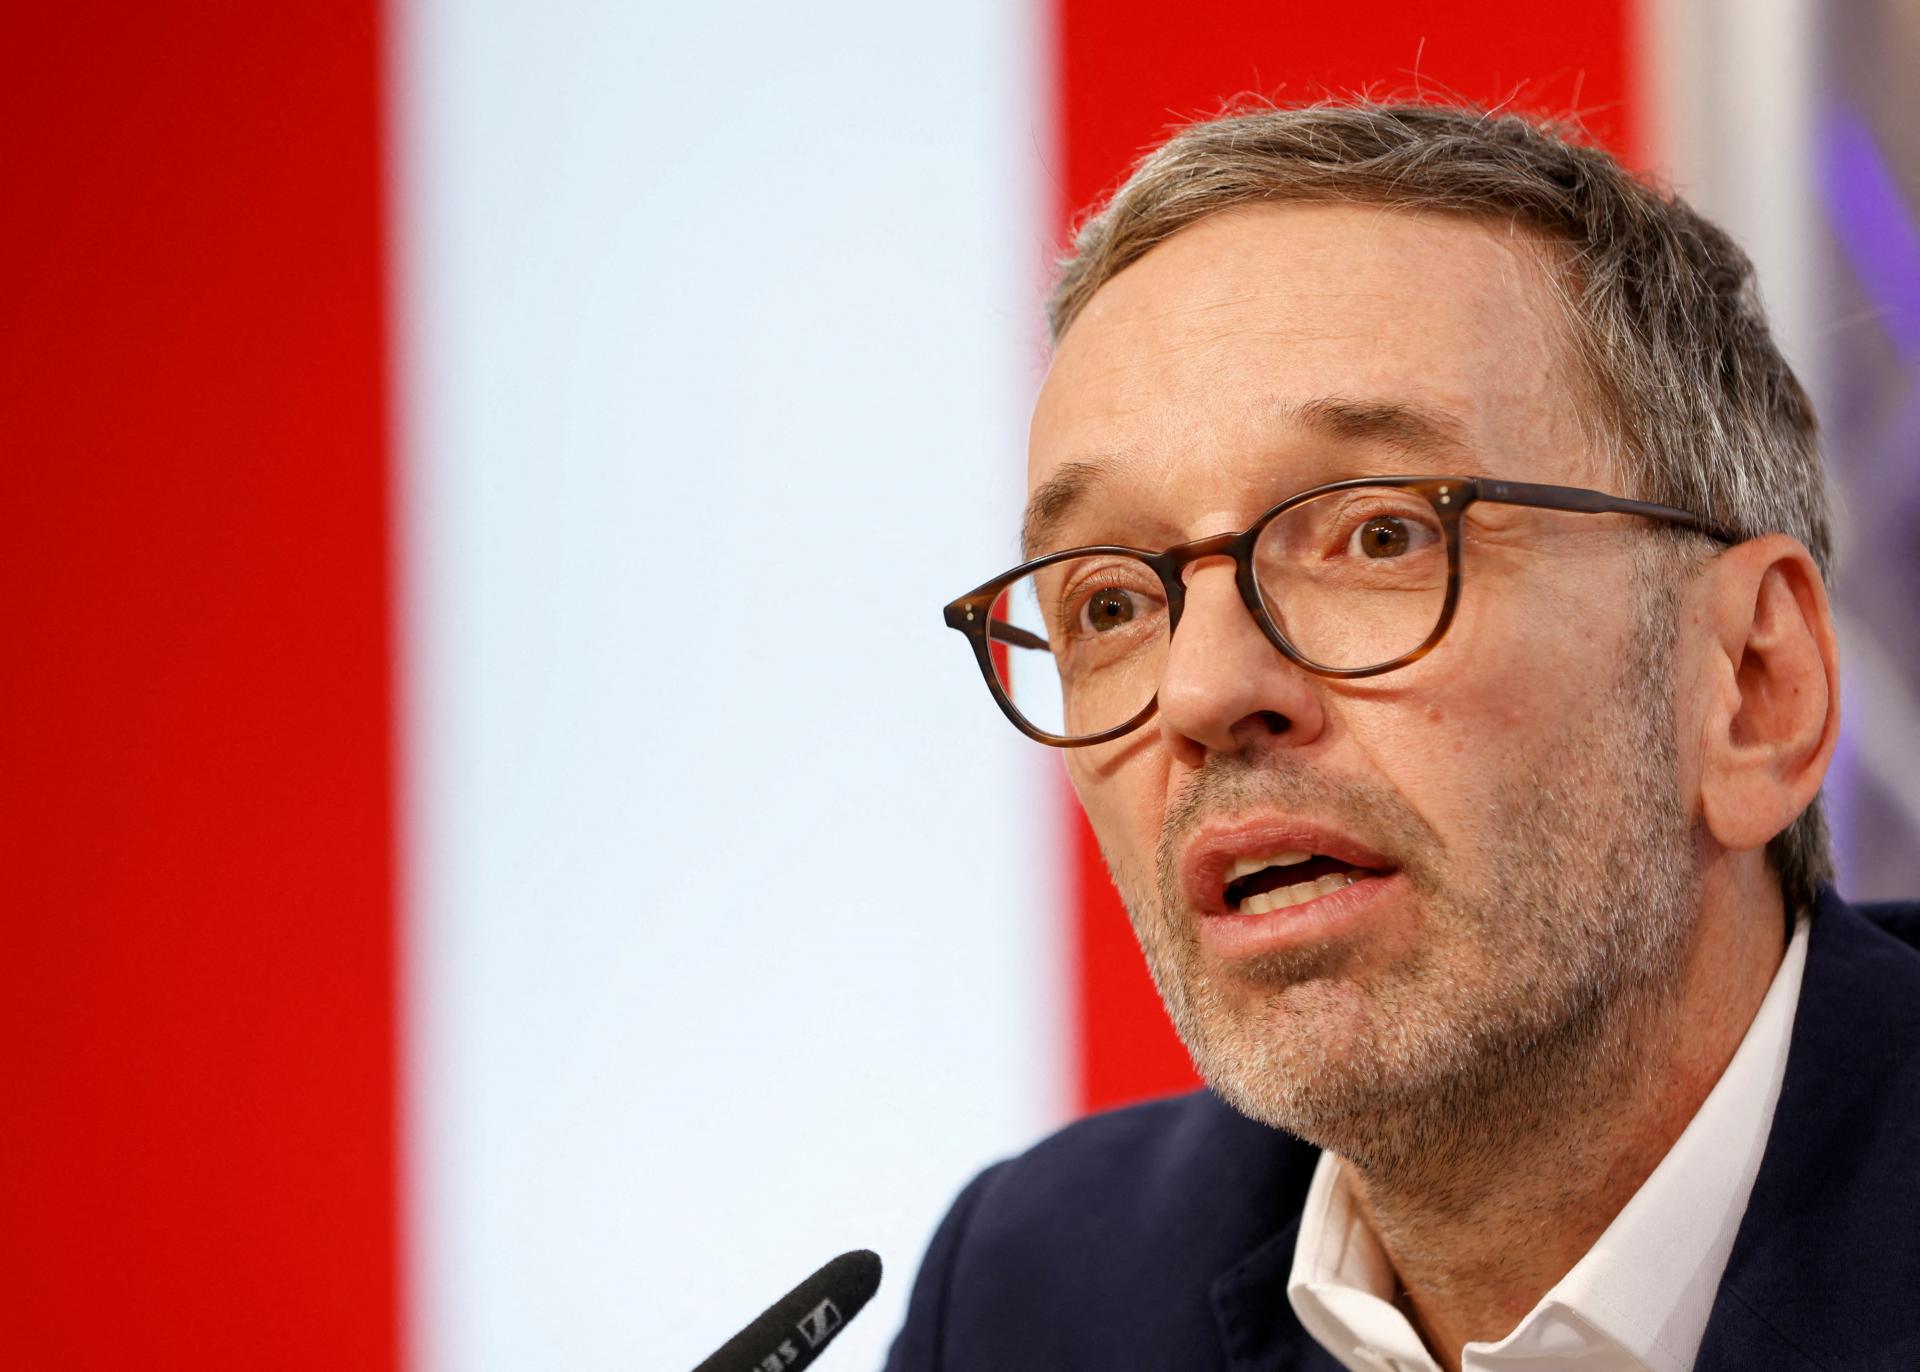 Rakúskom otriasa špionážny škandál. Populistická strana FPÖ čelí pred voľbami obvineniam zo zneužitia moci